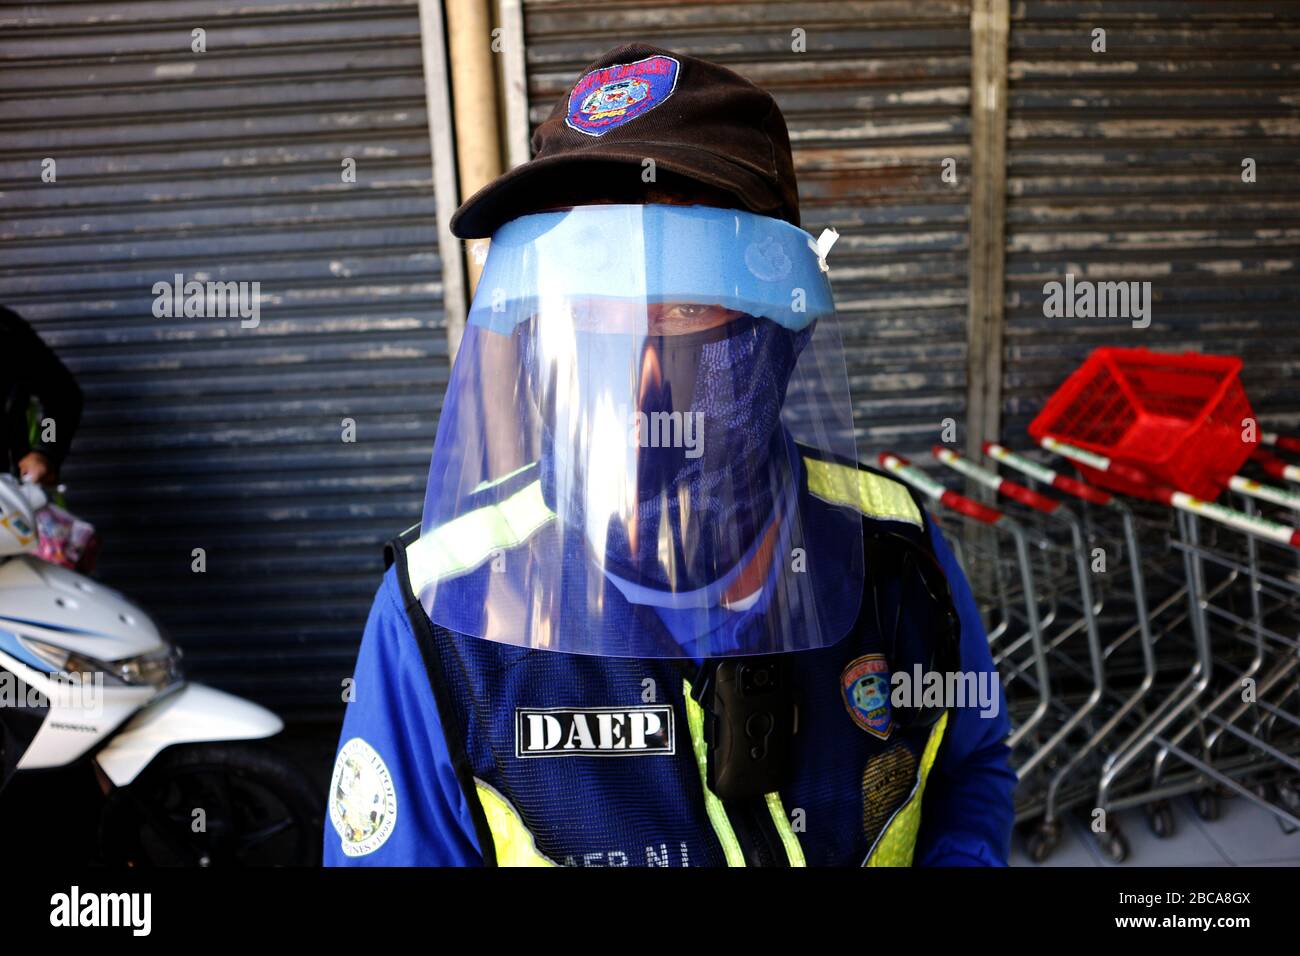 Antipolo City, Philippines - 2 avril 2020: Le policier porte un équipement de protection personnelle improvisé pendant son travail pendant le verrouillage ou le trajet Banque D'Images